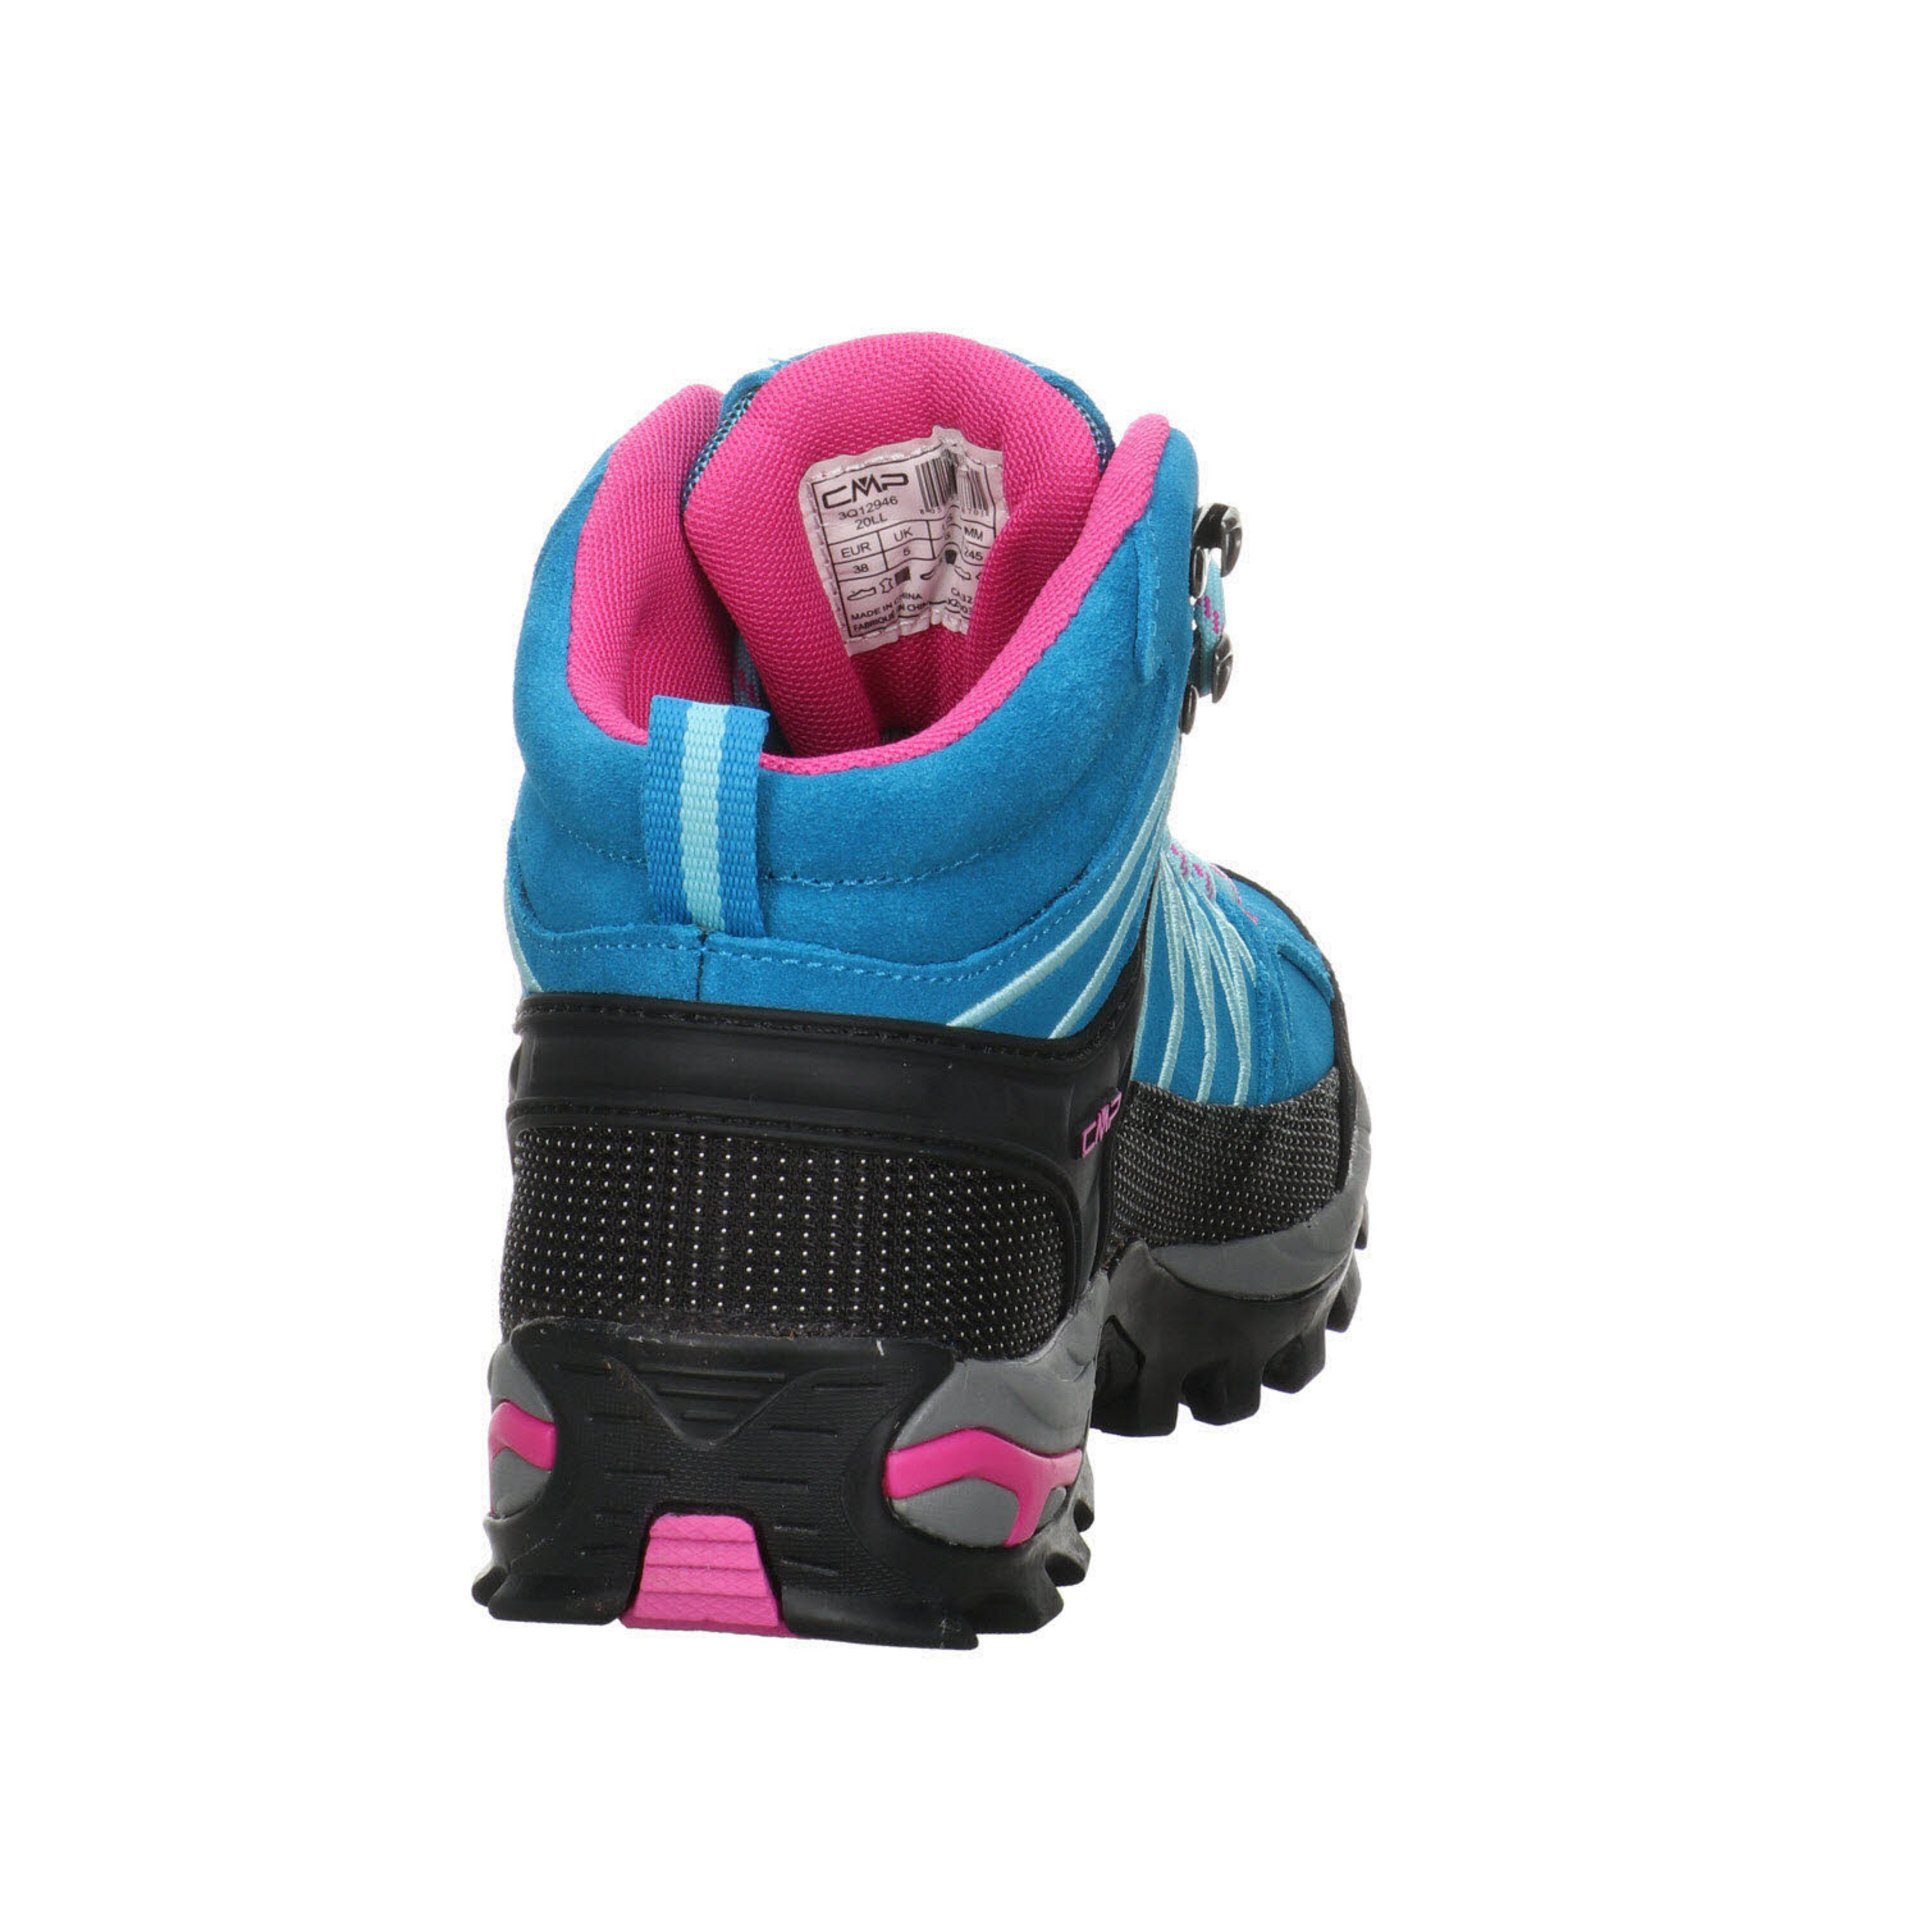 Outdoorschuh Mid CMP Damen Outdoorschuh türkis-pink Schuhe Leder-/Textilkombination Outdoor Rigel